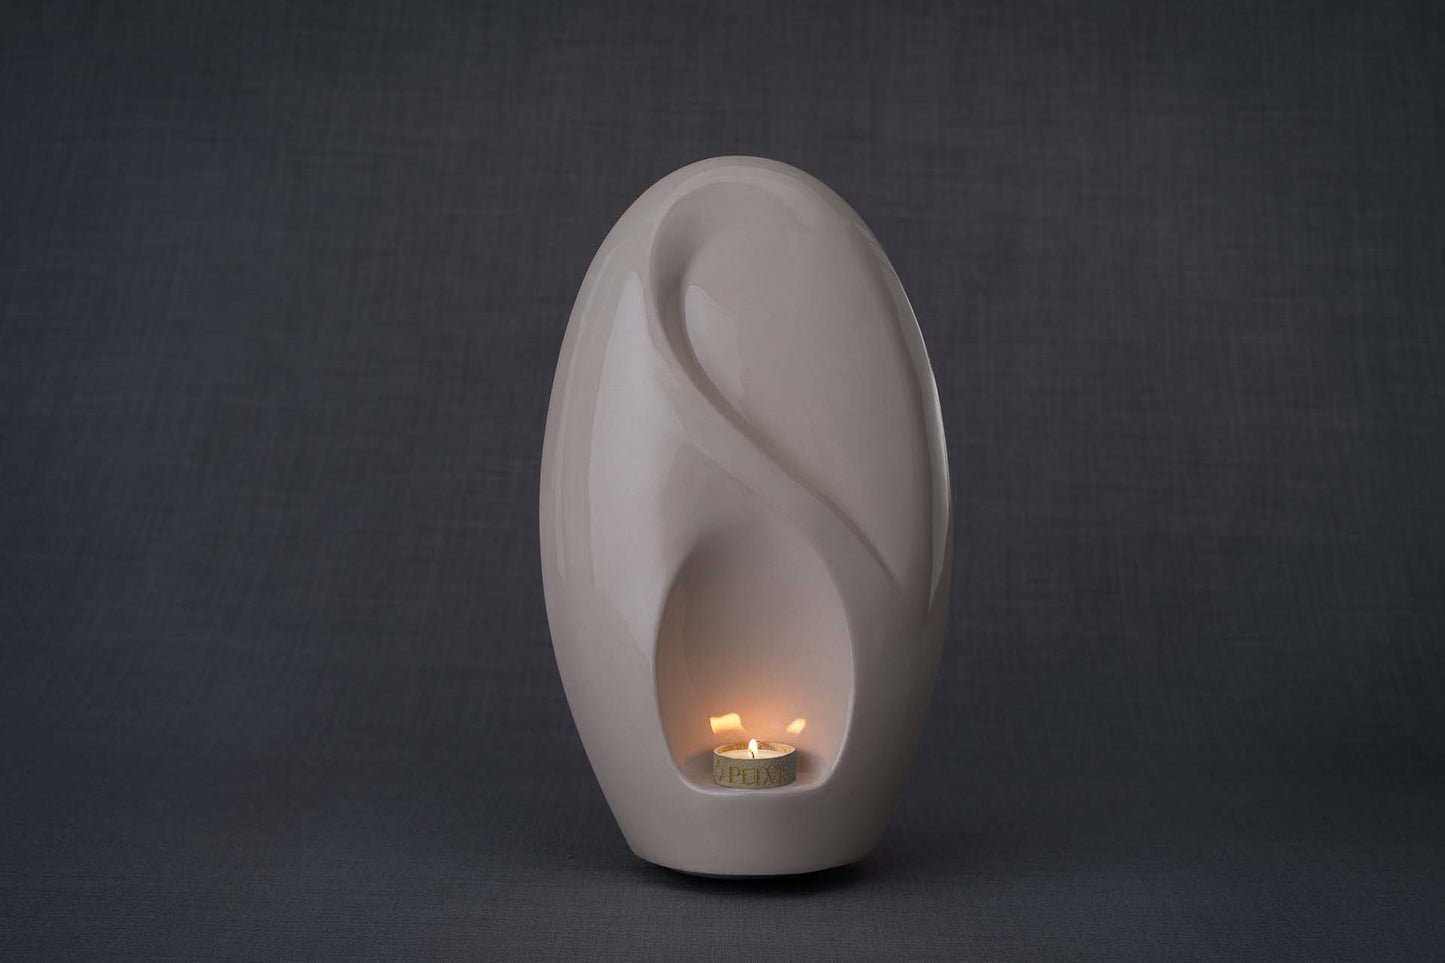 Pulvis Art Urns Adult Size Urn Eternity Handmade Cremation Urn for Ashes - Large | Transparent | Ceramic